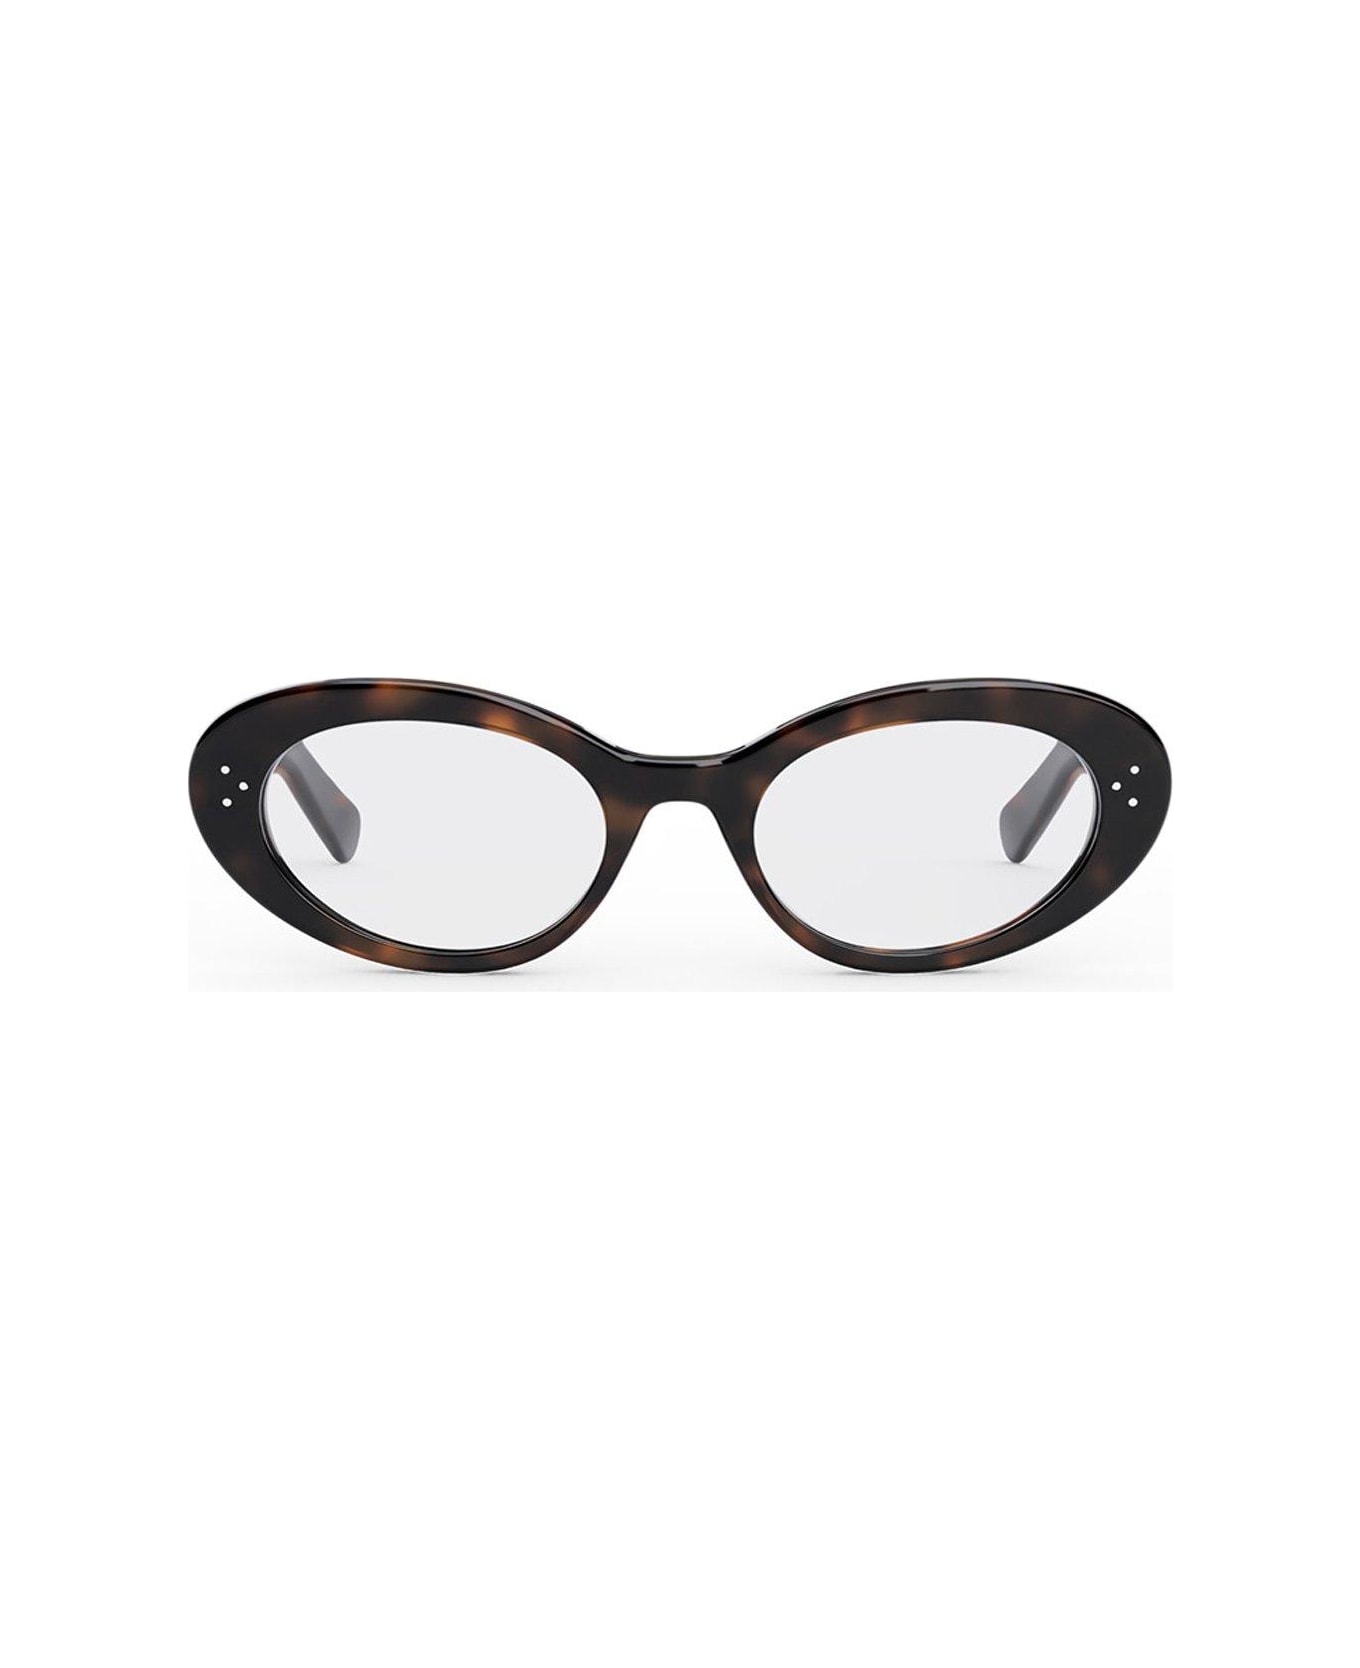 Celine Cat-eye Glasses - 053 アイウェア